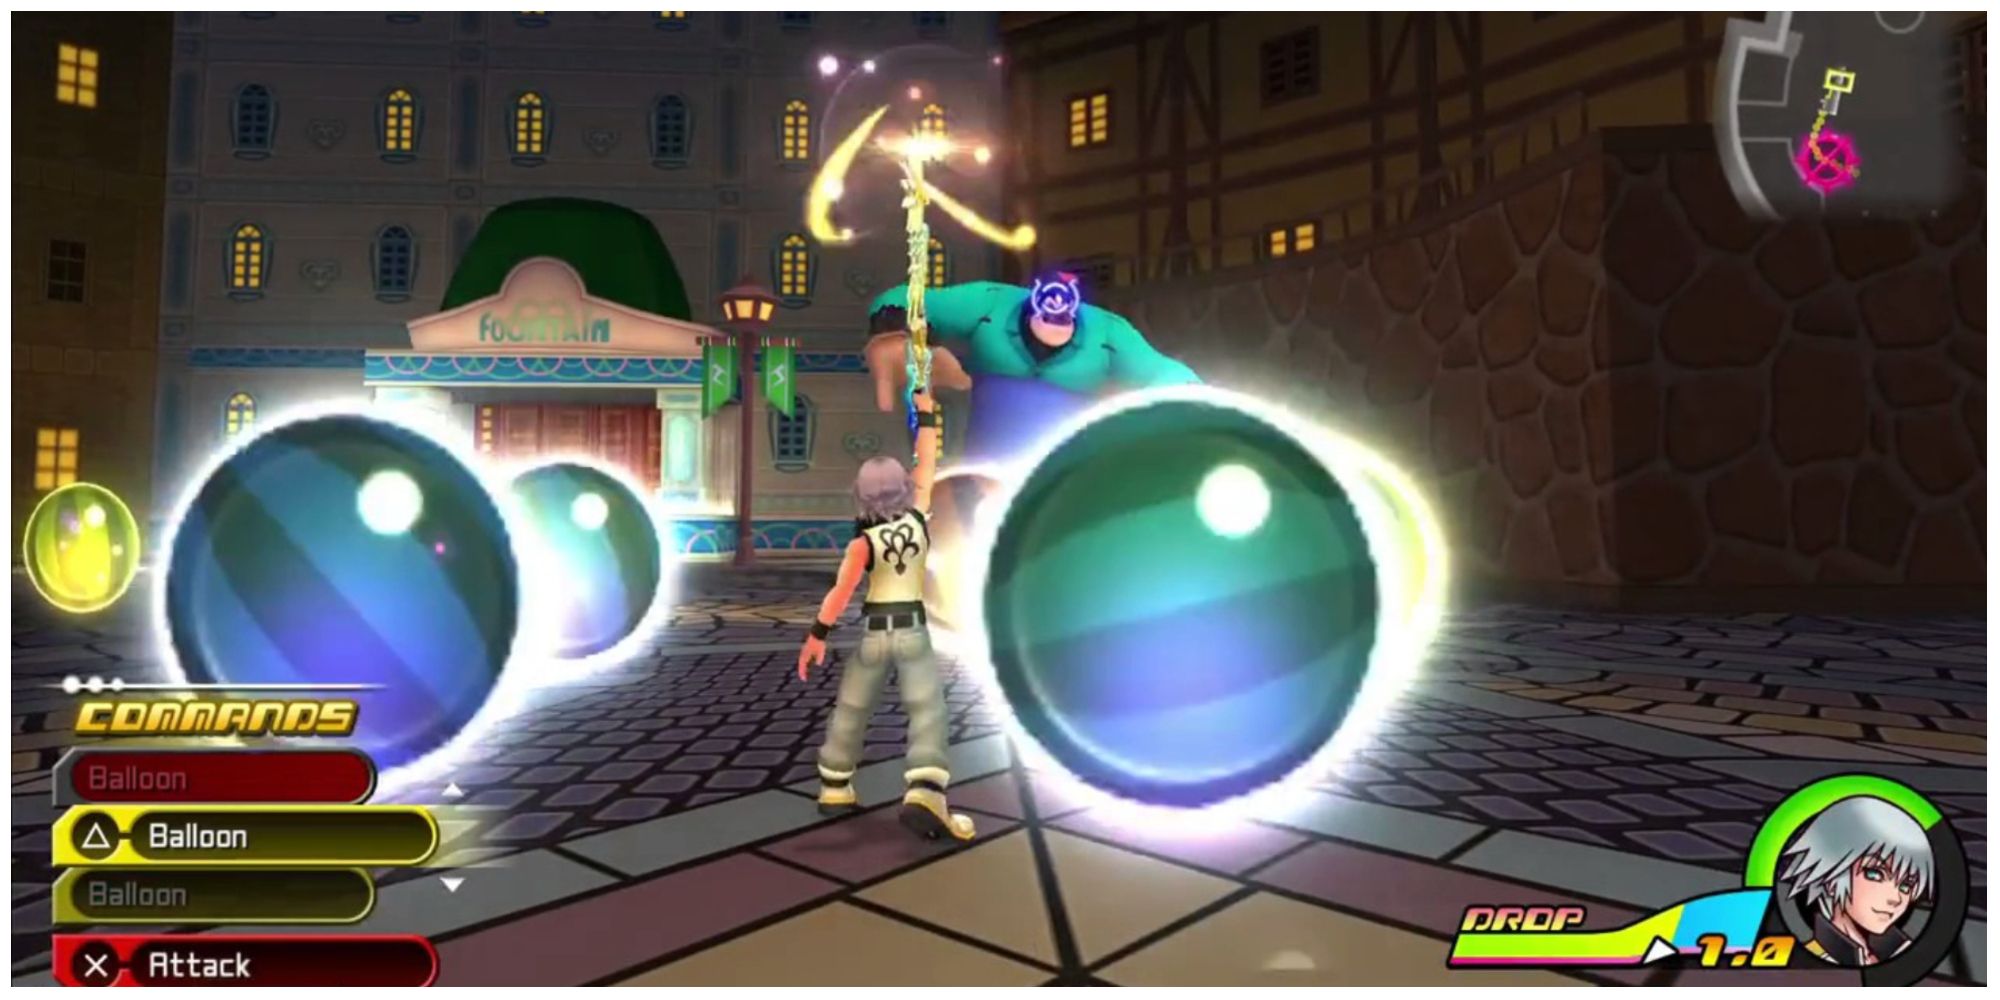 Riku casts Balloon in Kingdom Hearts 3D: Dream Drop Distance